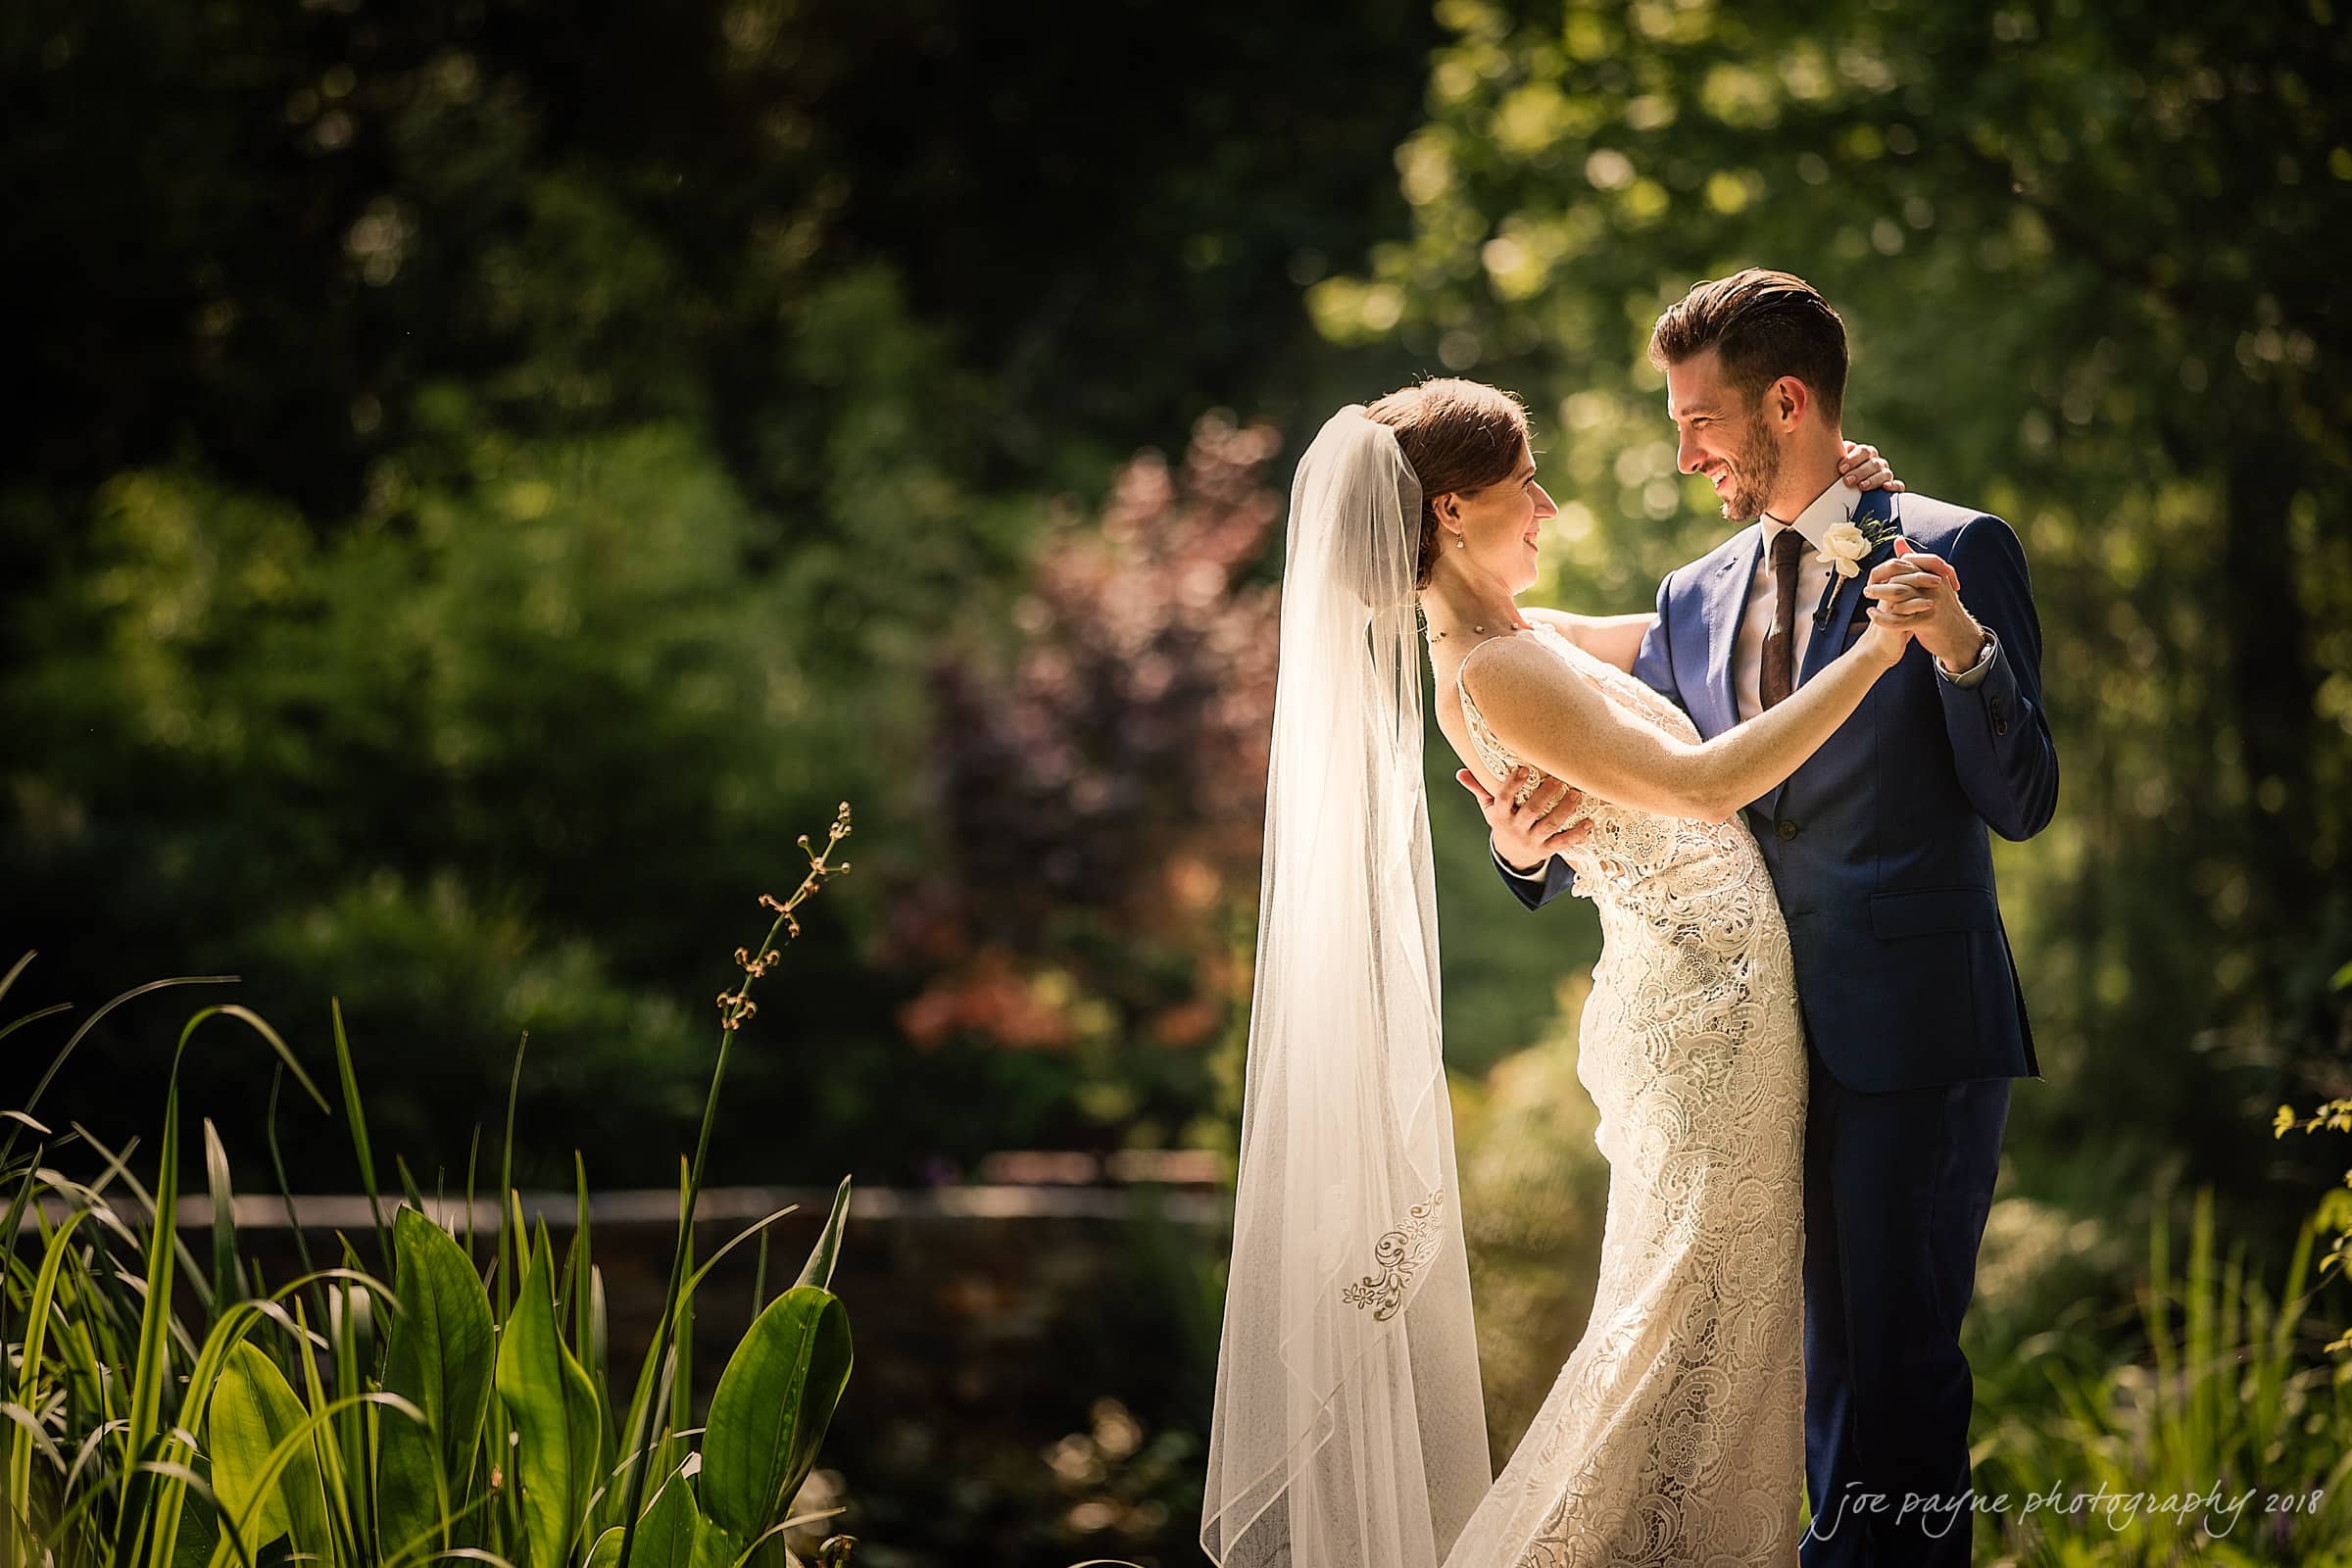 duke gardens wedding photography - lauren & ricky.